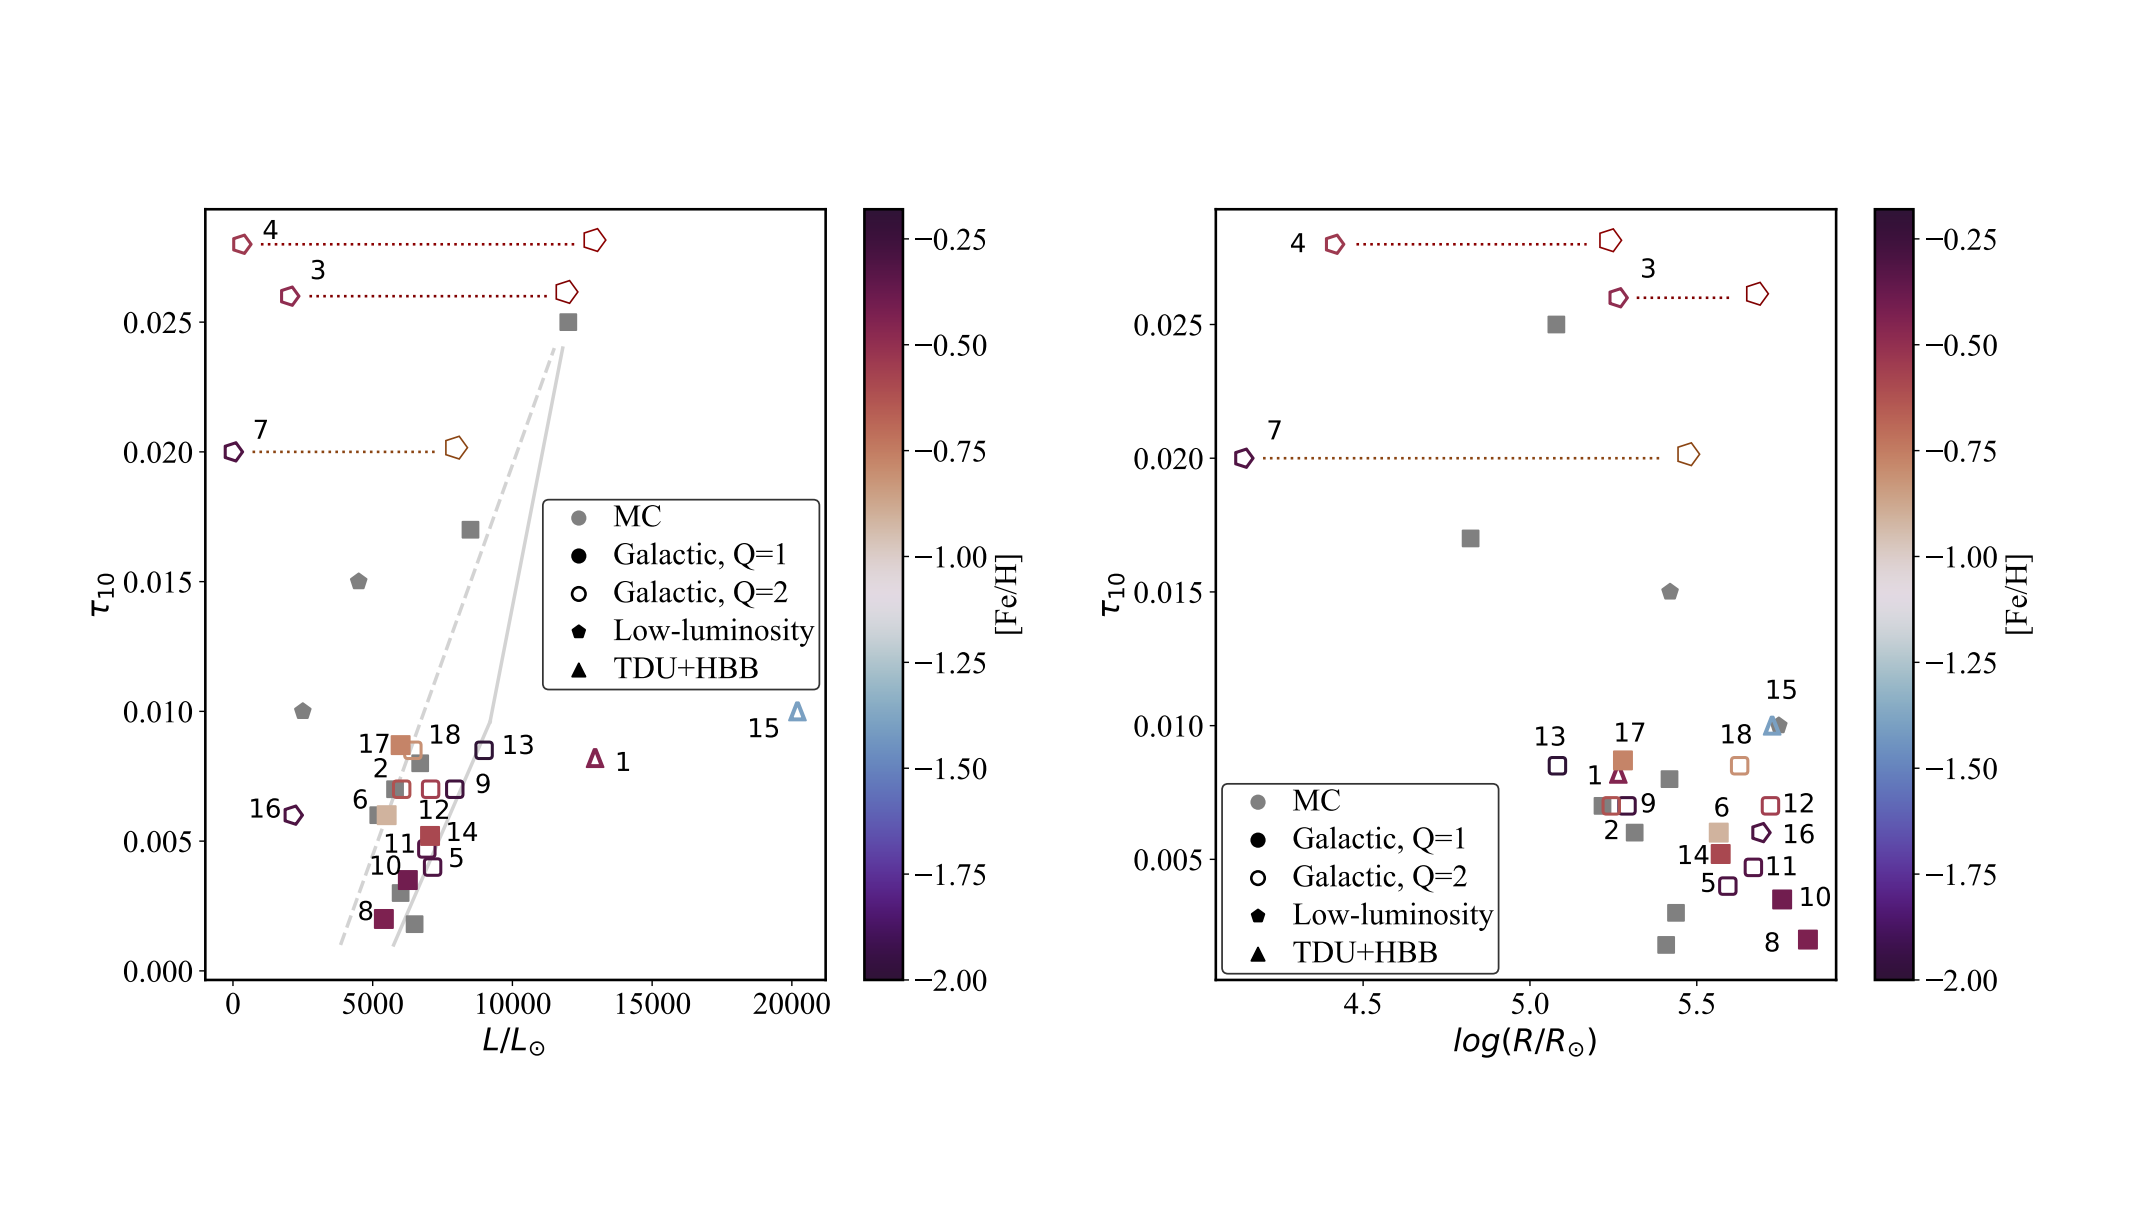 Estudiar estrellas ricas en carbono post-AGB en la Vía Láctea para comprender la producción de polvo de carbono de estrellas en evolución